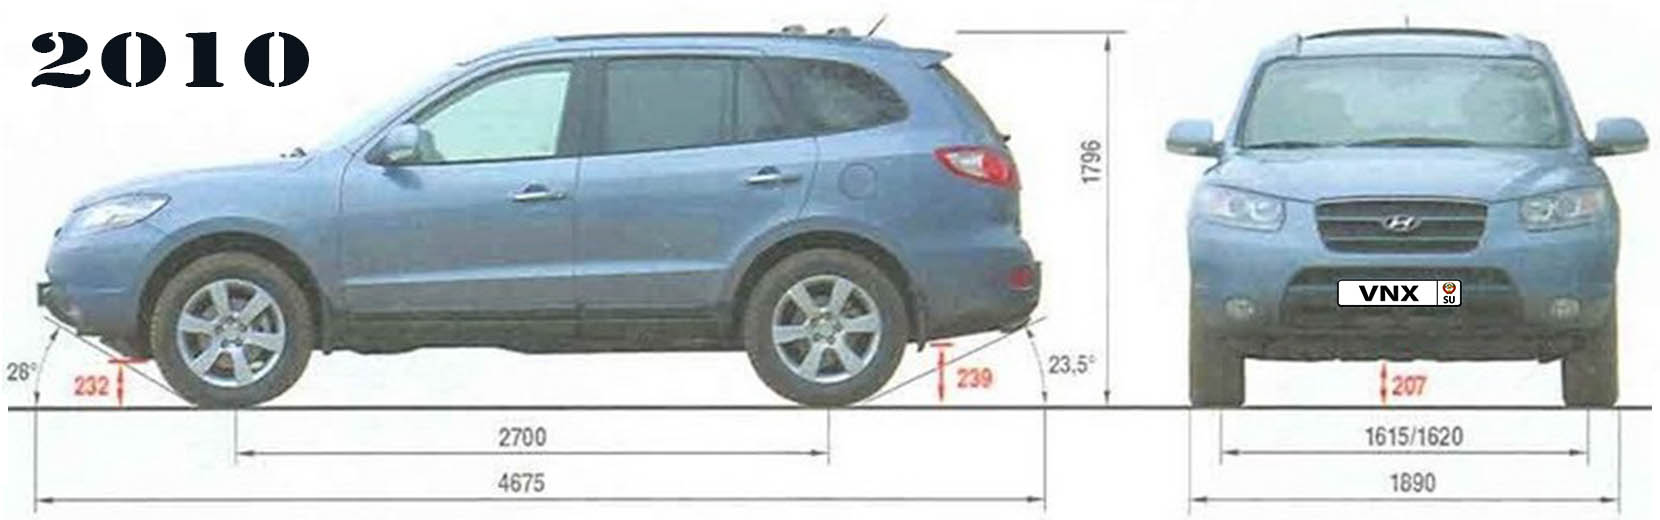 Габаритные размеры Санта Фе 2010 (dimensions Hyundai Santa Fe mk2)